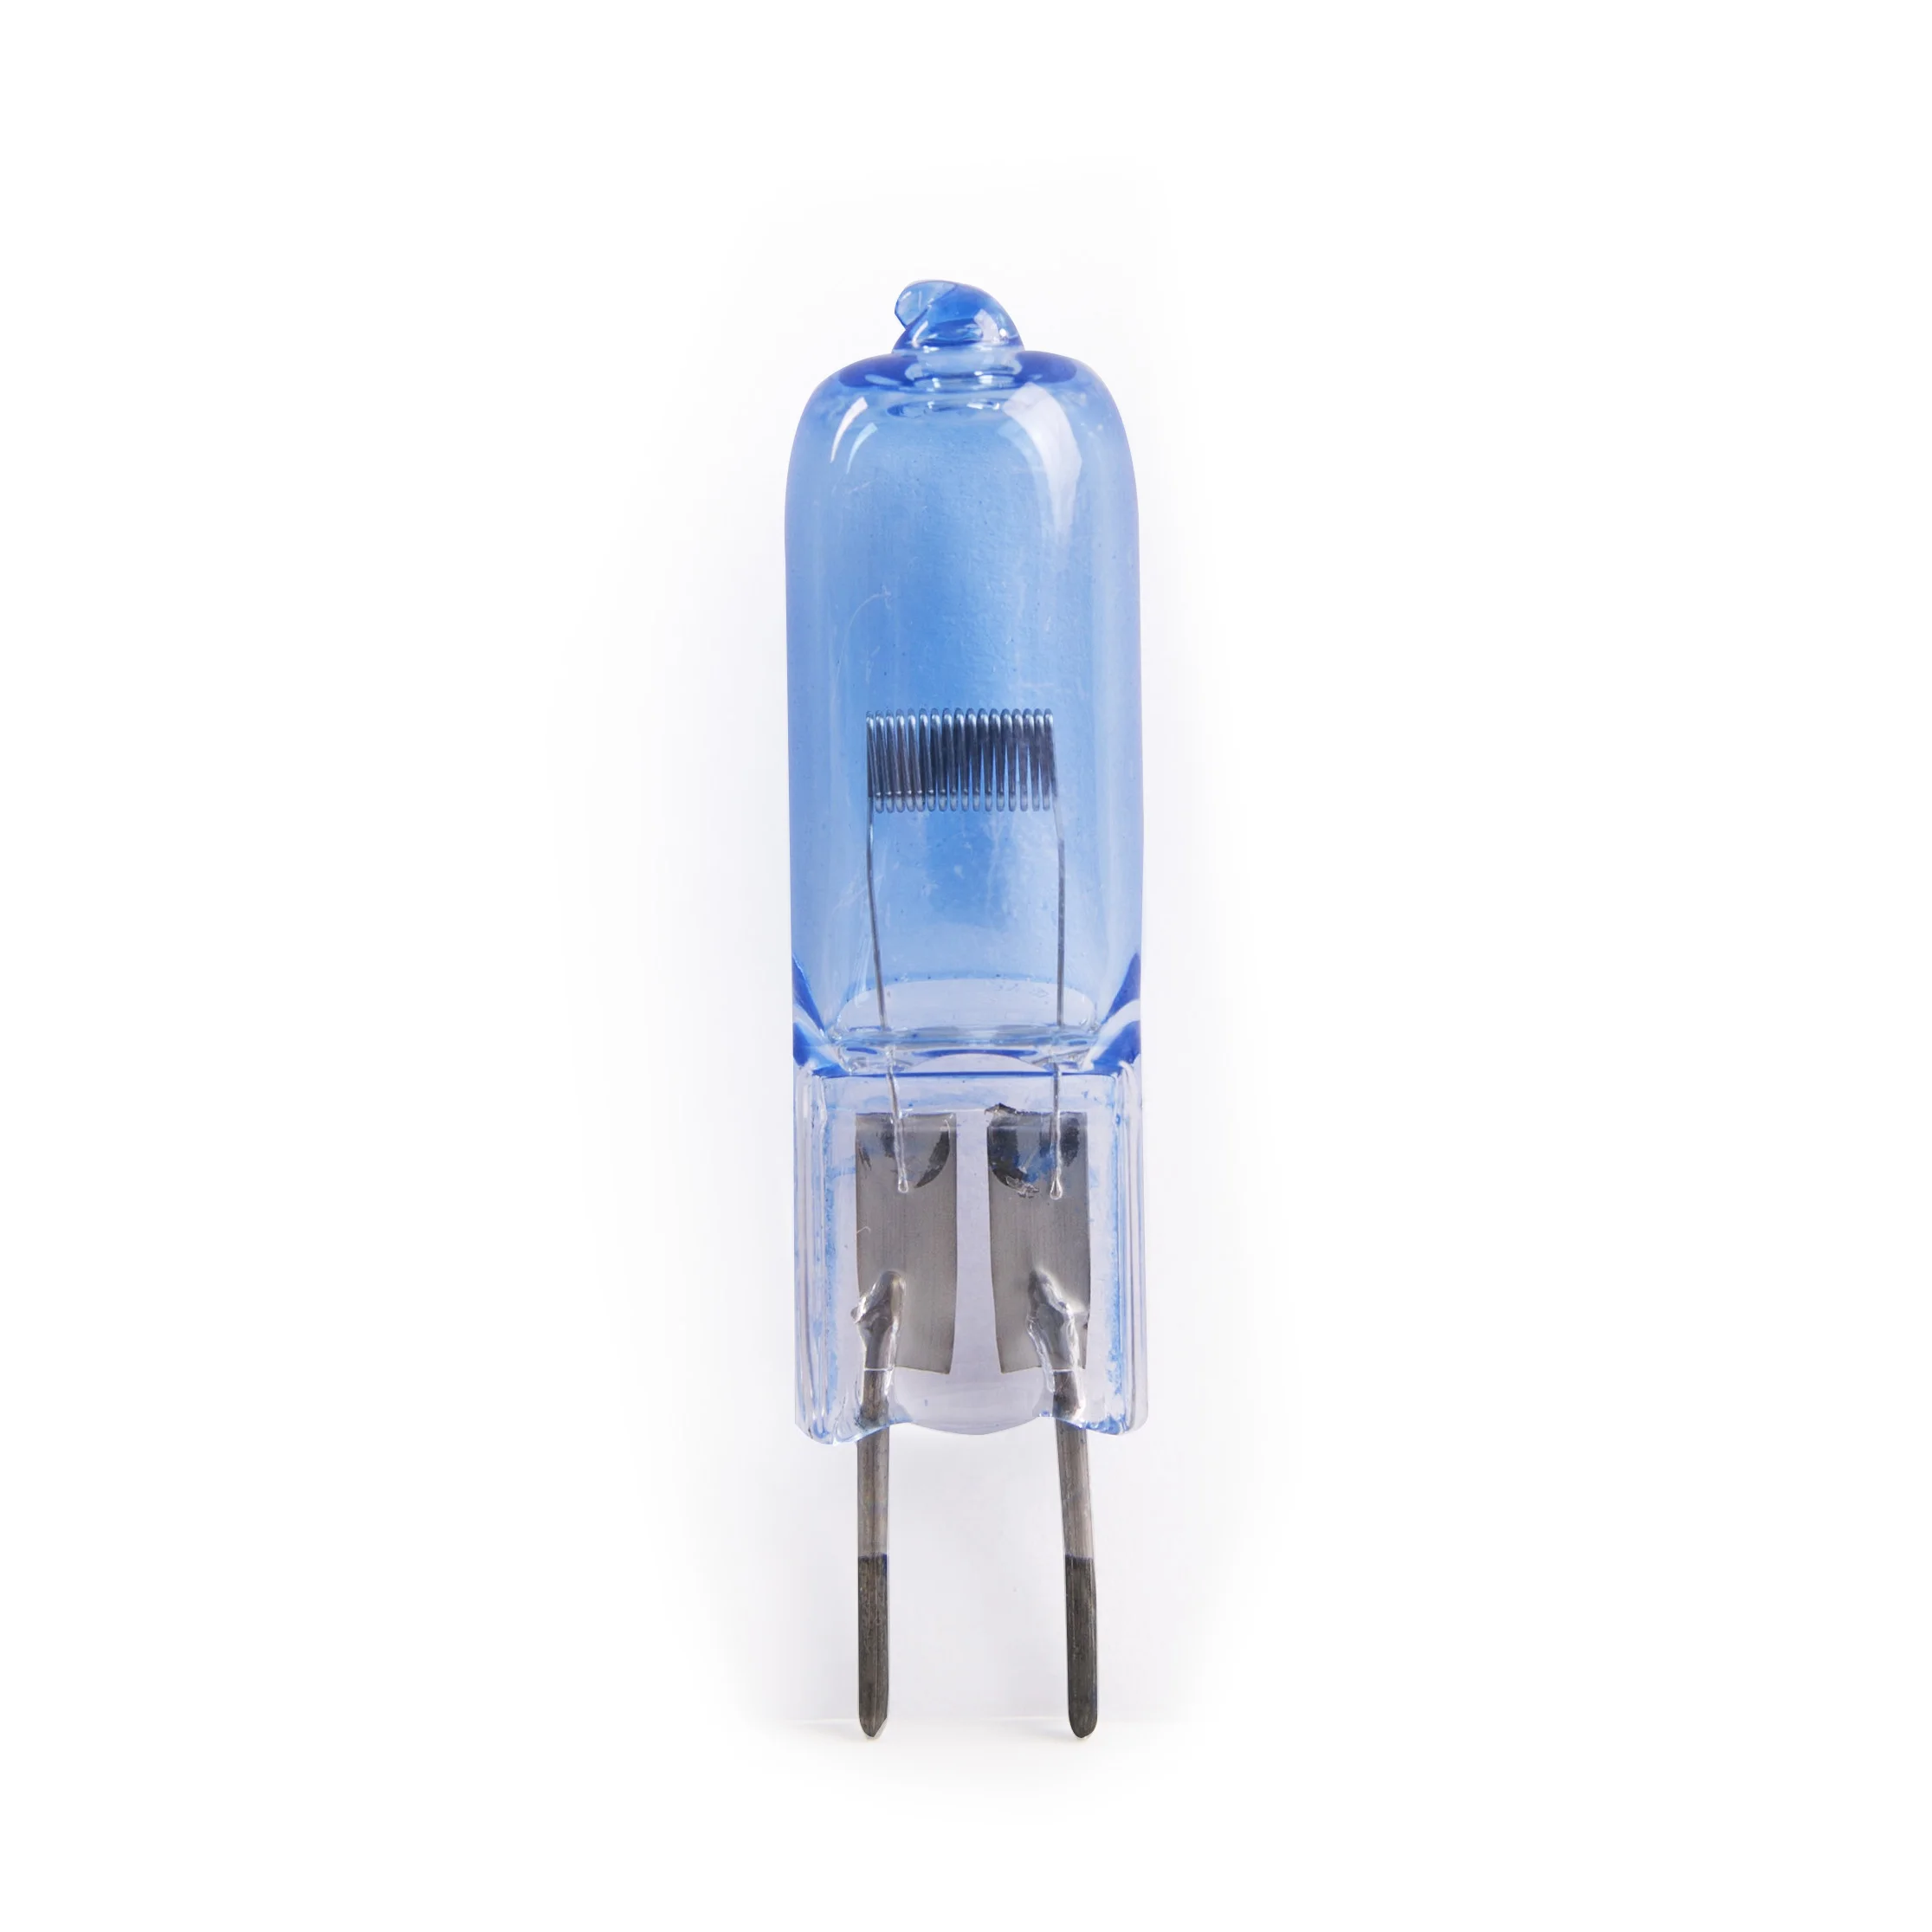 

halogen bulb FRANCELAMPES G6.35 FDV M184 150W 24V 64642HLX blue coating for O.T light